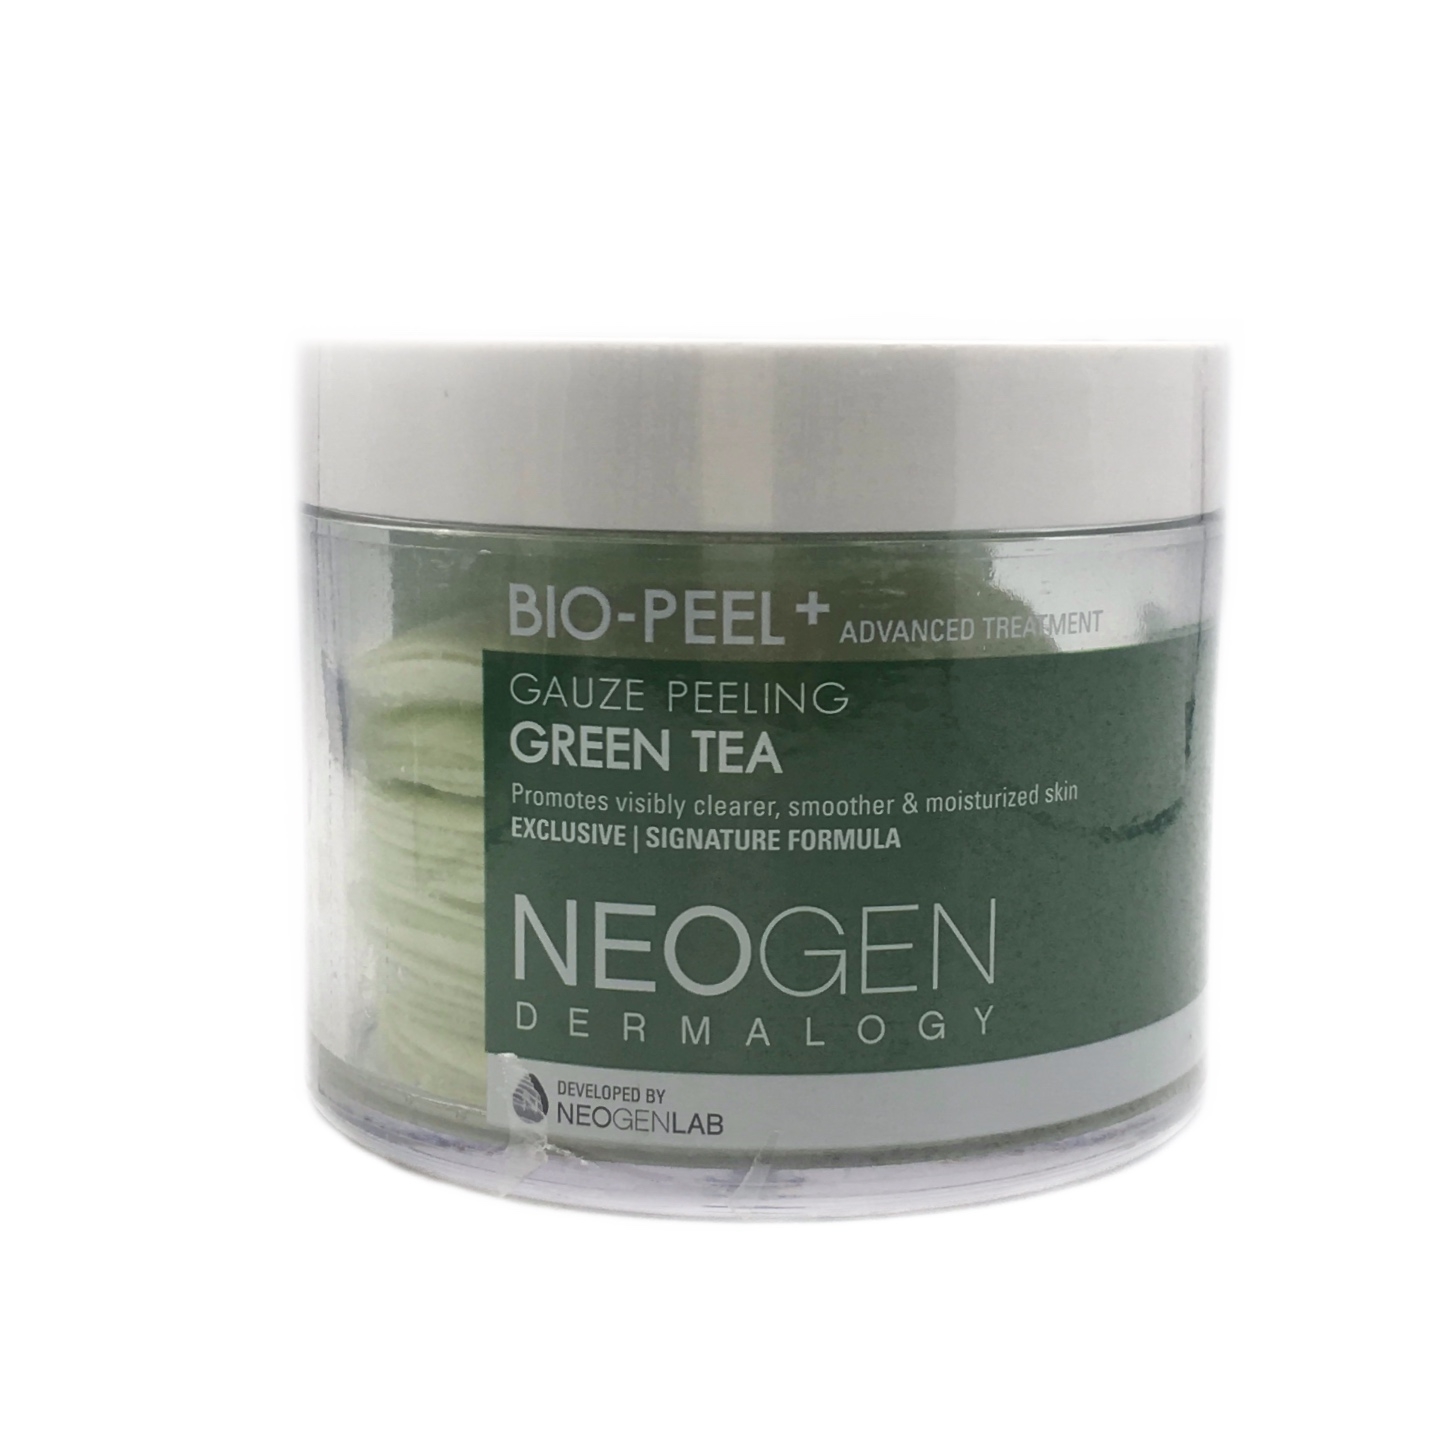 Neogen Bion Peel+ Gauze Peeling Green Tea Skin Care